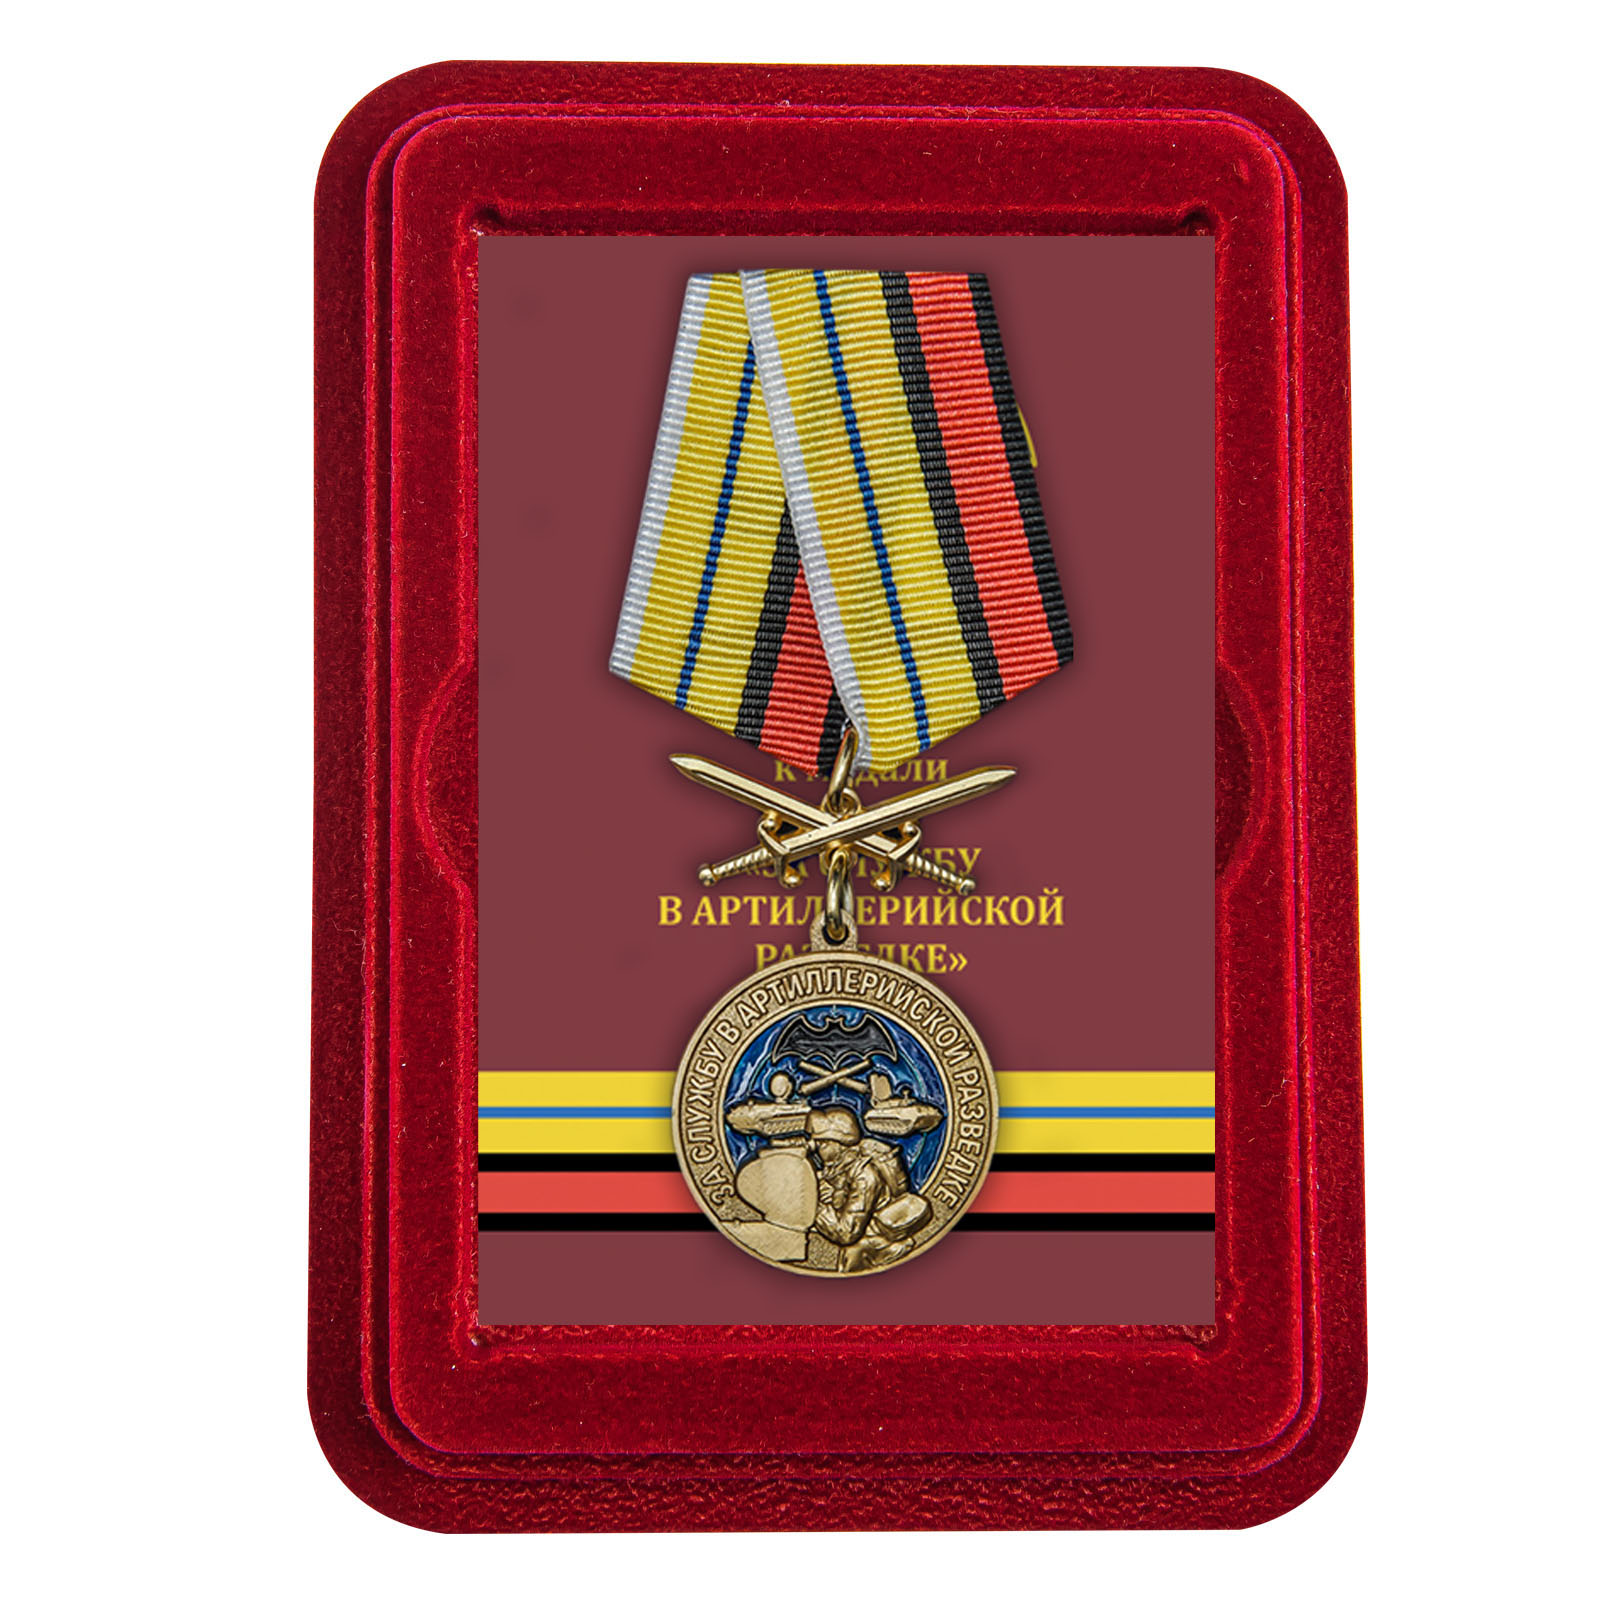 Купить медаль За службу в артиллерийской разведке онлайн выгодно